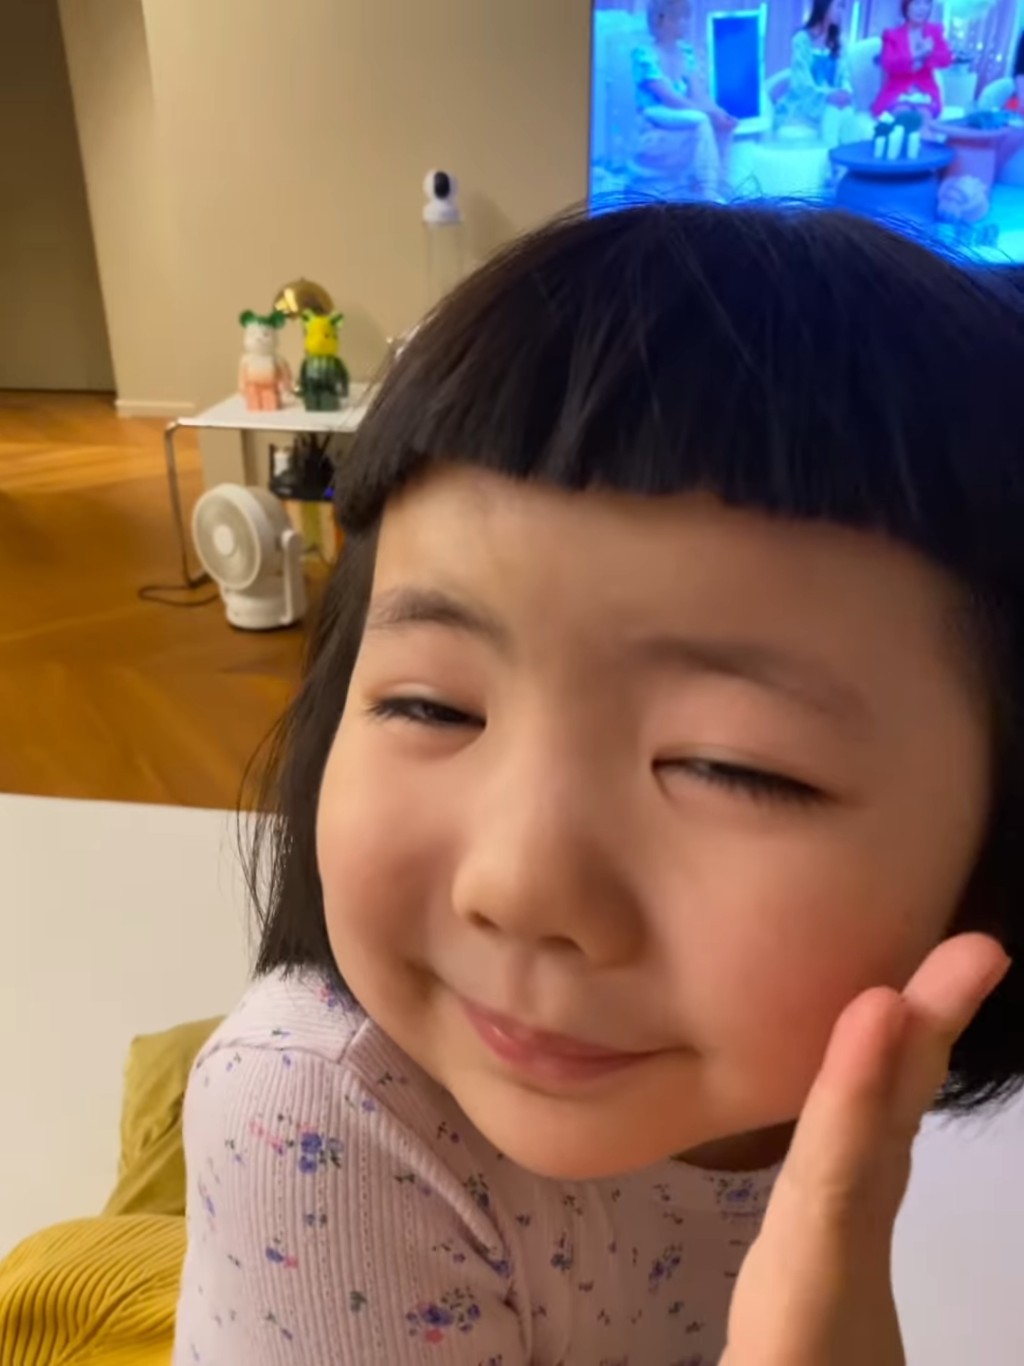 網民指Lucy發生家居意外，為何其母仍笑得出，梁志瑩昨日即再分享Lucy的最新影片。